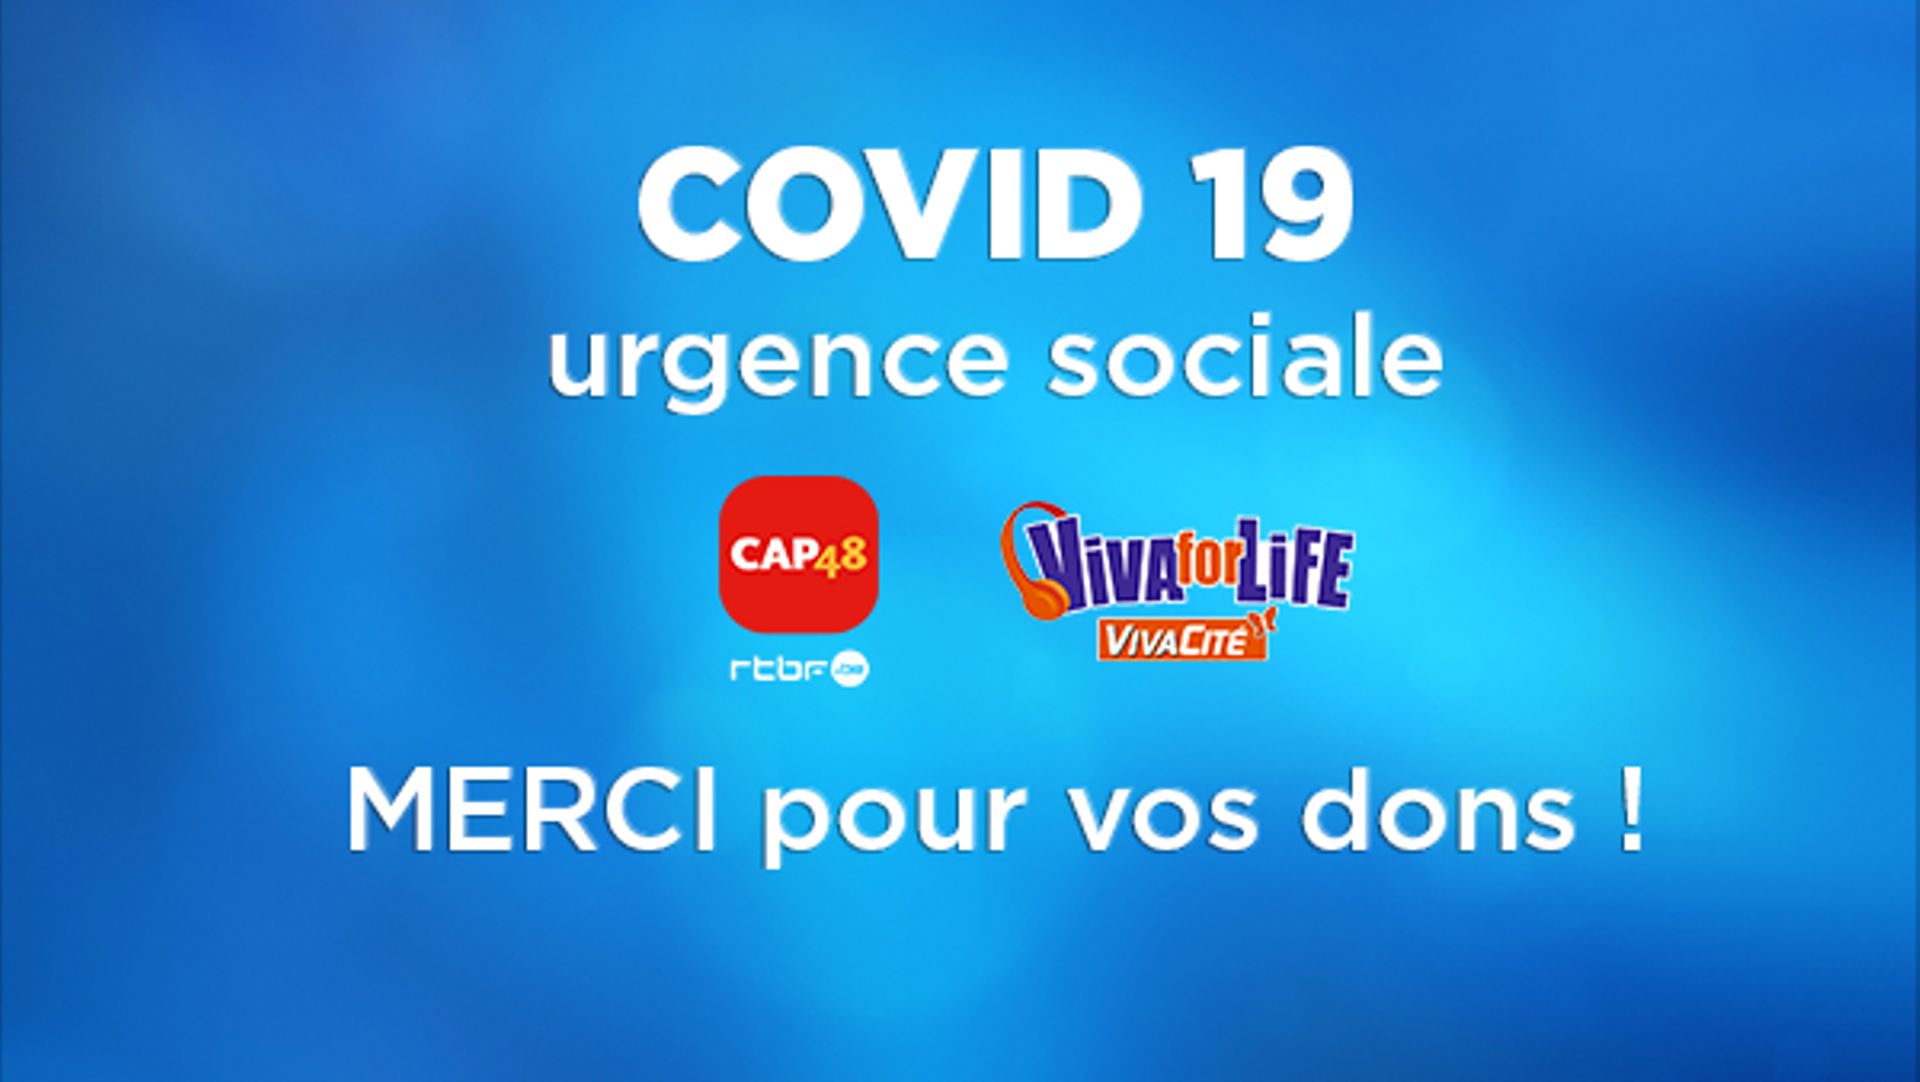 CAP48 et Viva for Life financent 138 associations pour un montant total de 650.000 euros